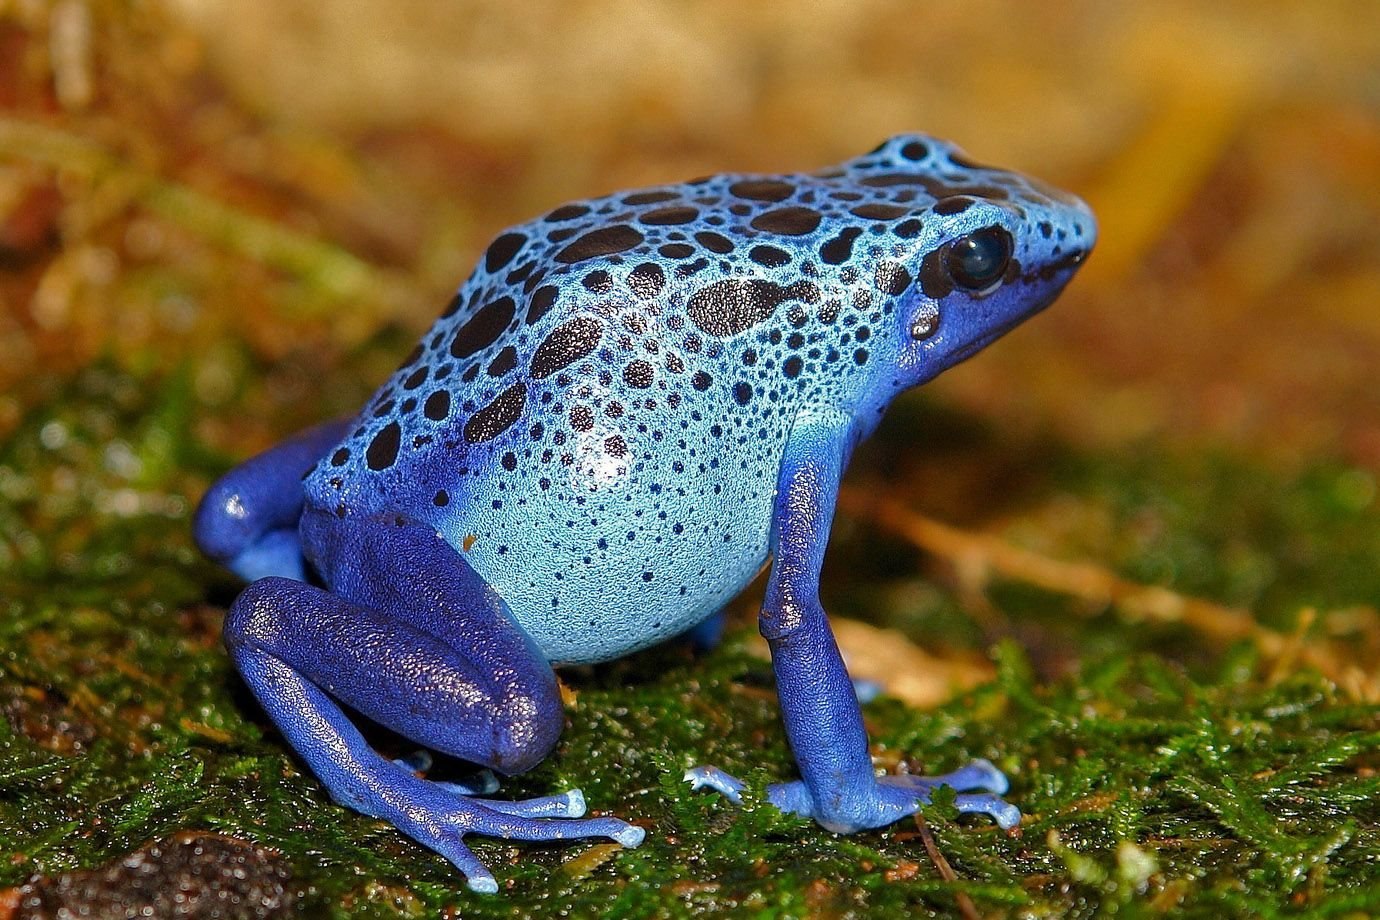 Elephant frog. Синий древолаз лягушка. Квакша древолаз голубая. Лягушка пятнистый древолаз. Ядовитая лягушка древолаз синяя.